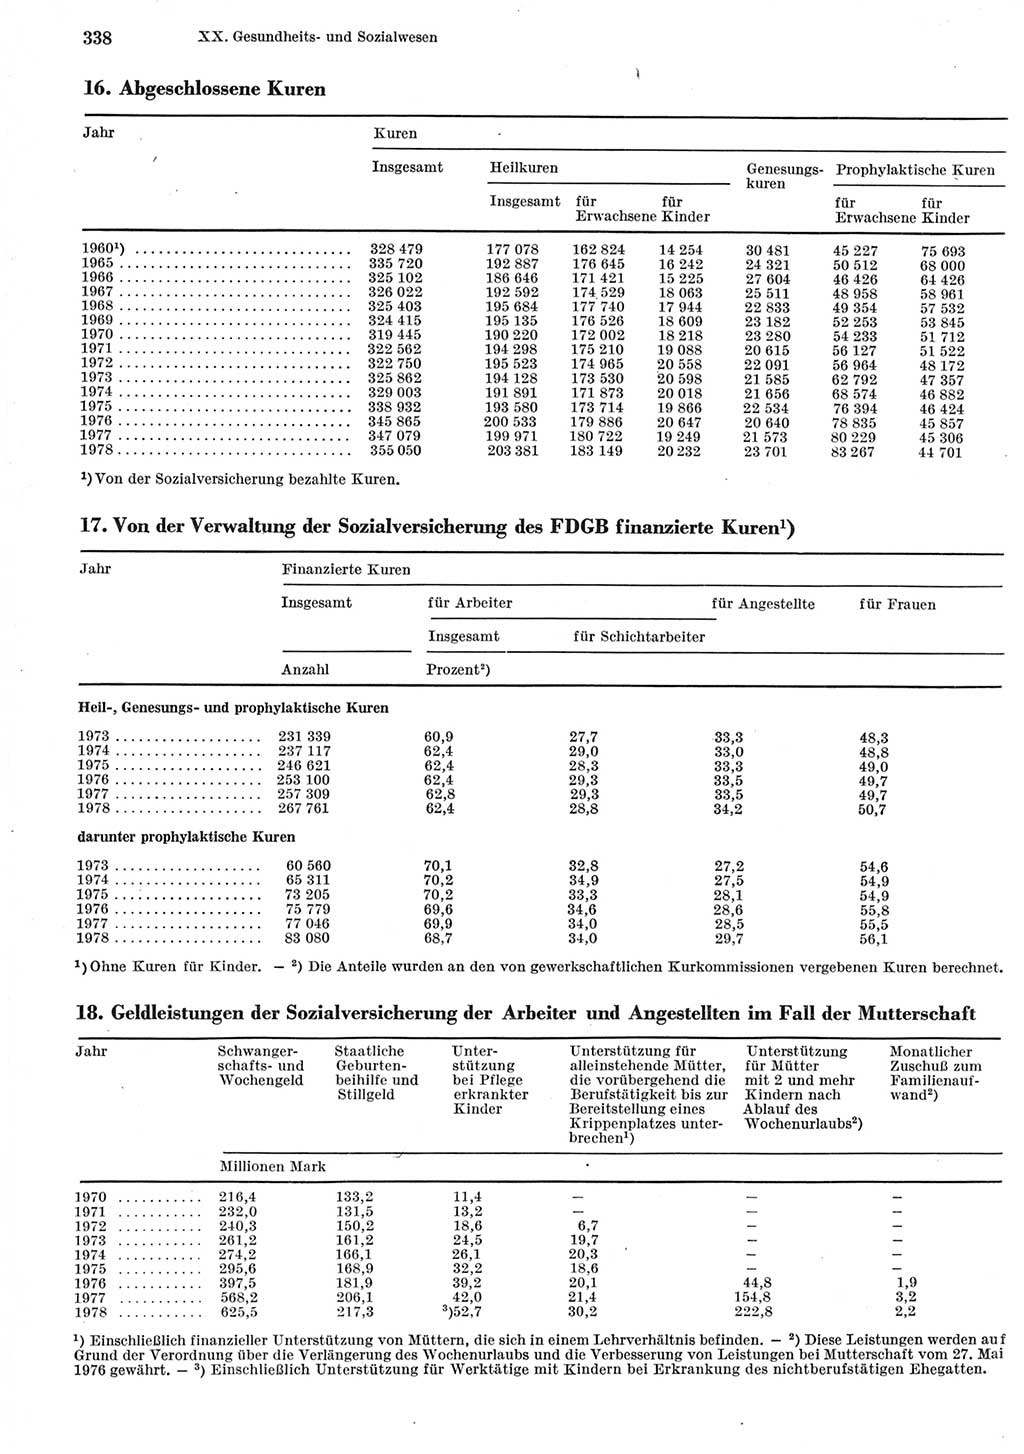 Statistisches Jahrbuch der Deutschen Demokratischen Republik (DDR) 1979, Seite 338 (Stat. Jb. DDR 1979, S. 338)